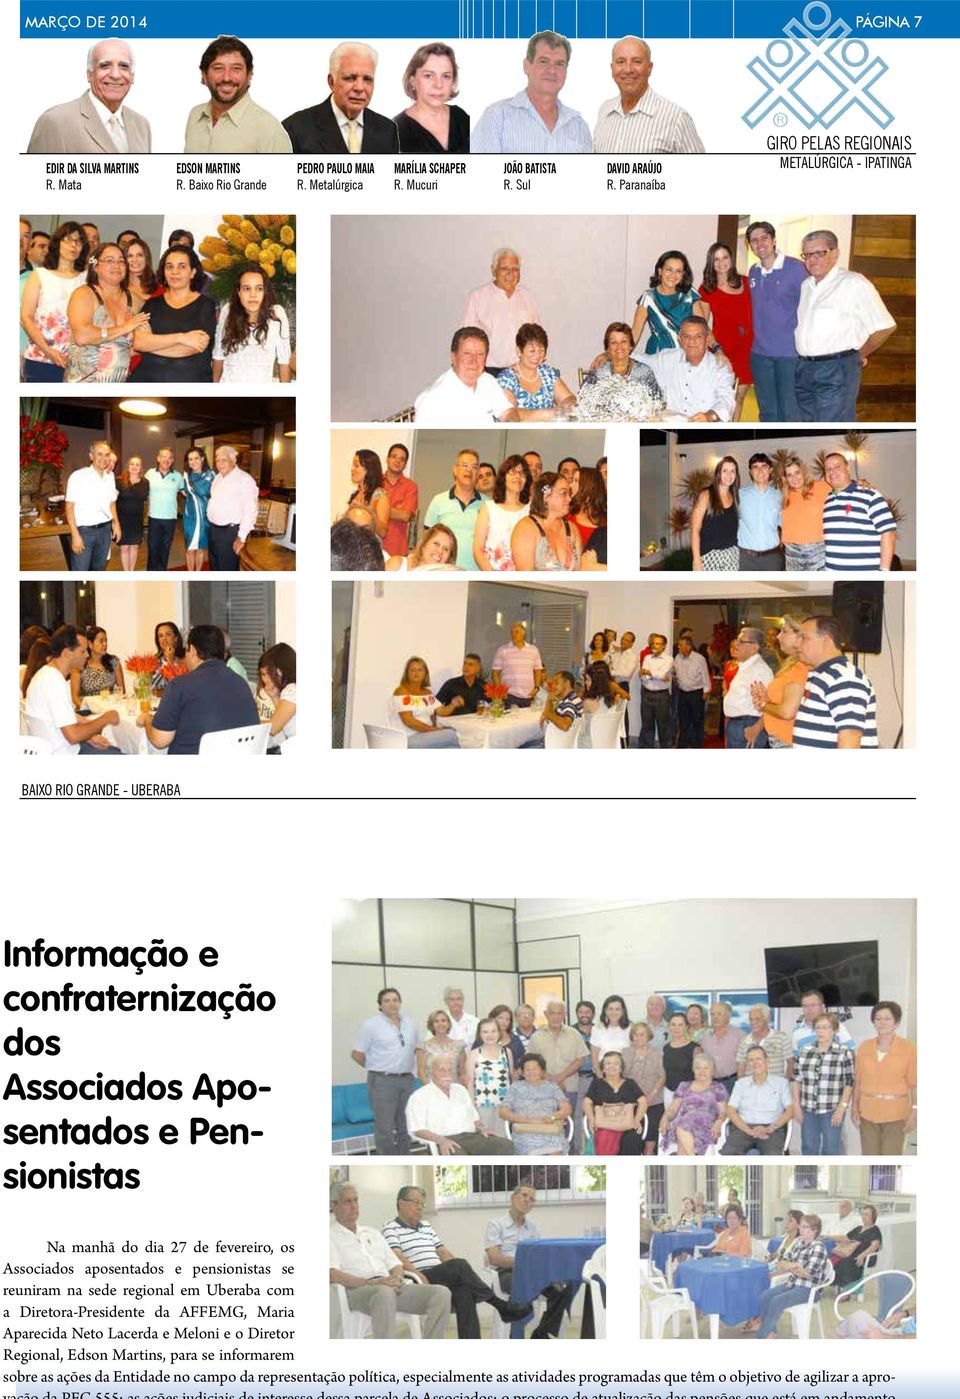 fevereiro, os Associados aposentados e pensionistas se reuniram na sede regional em Uberaba com a Diretora-Presidente da AFFEMG, Maria Aparecida Neto Lacerda e Meloni e o Diretor